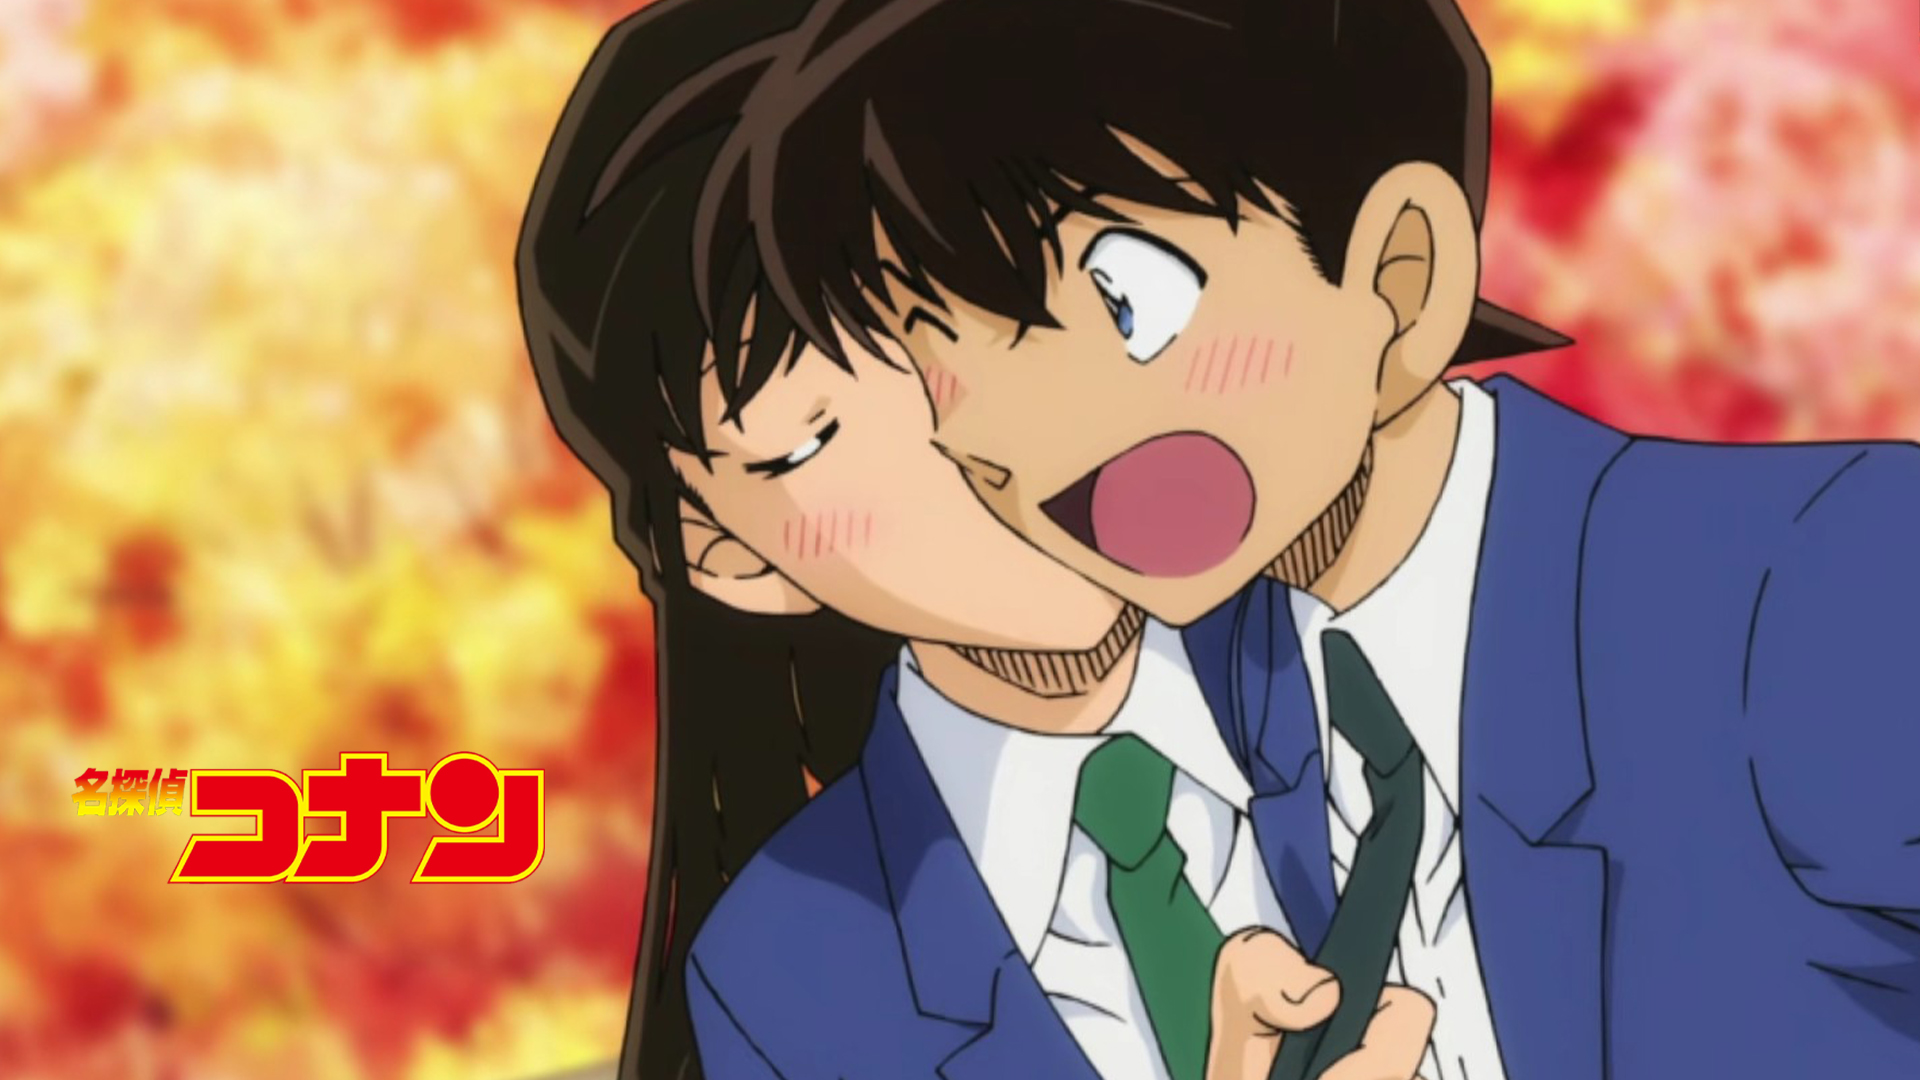 Shinichi & Ran - Bộ anime nổi tiếng về cặp đôi Shinichi và Ran, luôn là mối tò mò và lòng đam mê của các fan hâm mộ yêu thích thể loại lãng mạn. Hãy xem ngay hình ảnh liên quan để cảm nhận mối tình đầy ngọt ngào và nhiệt huyết của cặp đôi này nào!